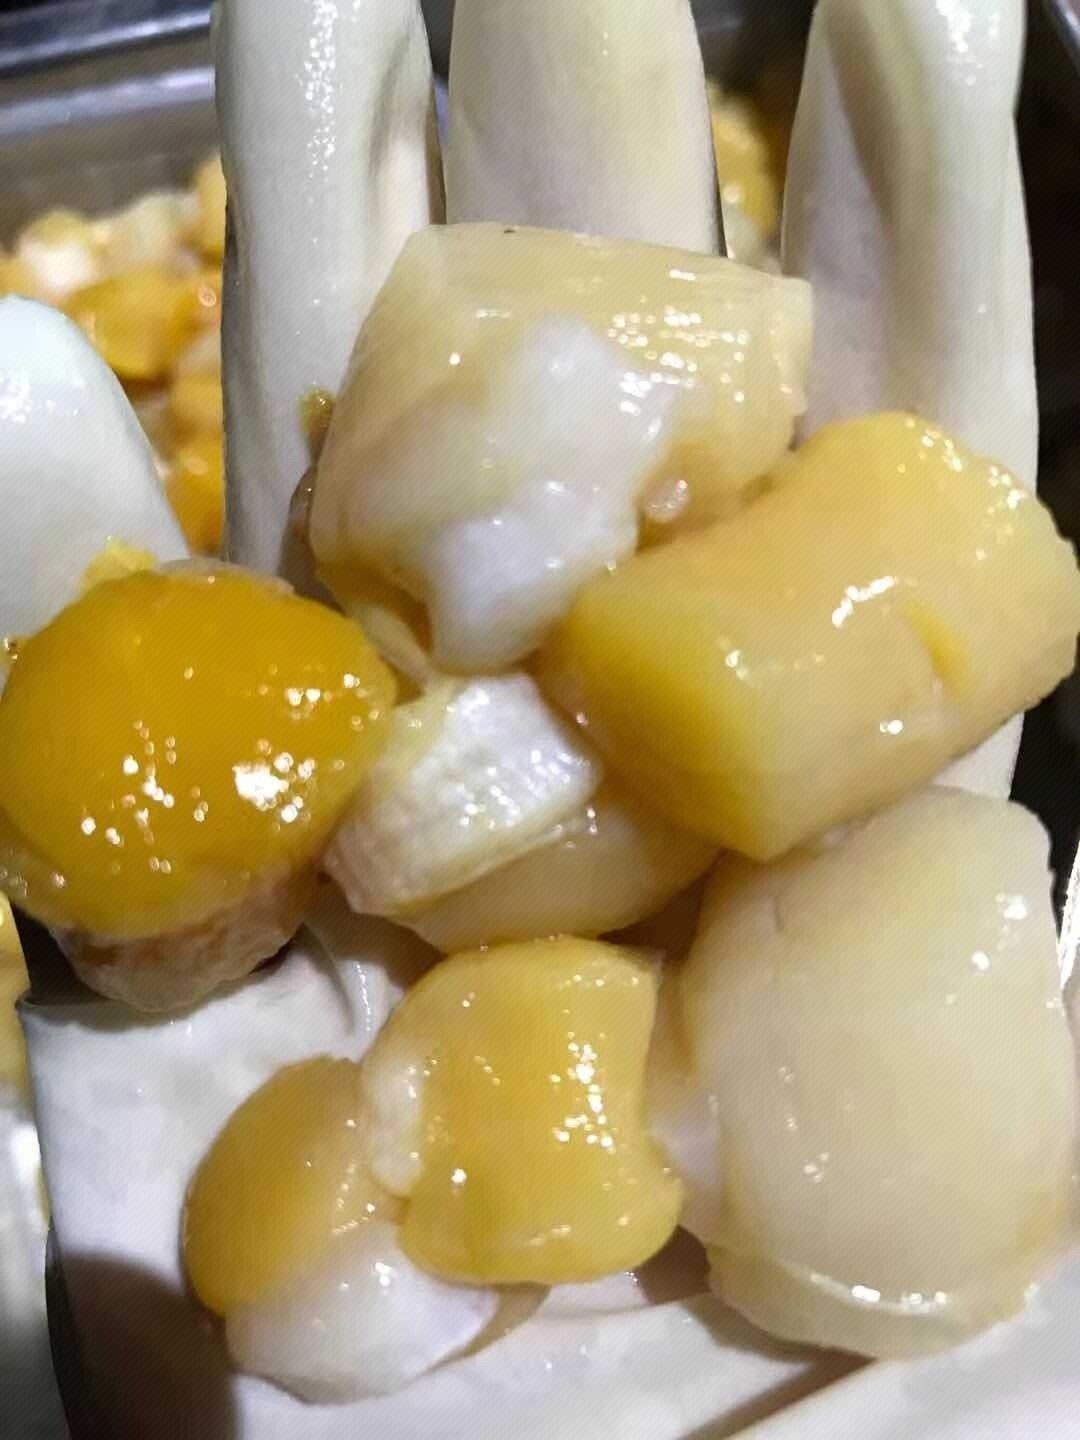 东山岛海鲜 新鲜瑶柱干贝,每粒都是活挖,特别鲜特别嫩,煮汤,炖蛋,下